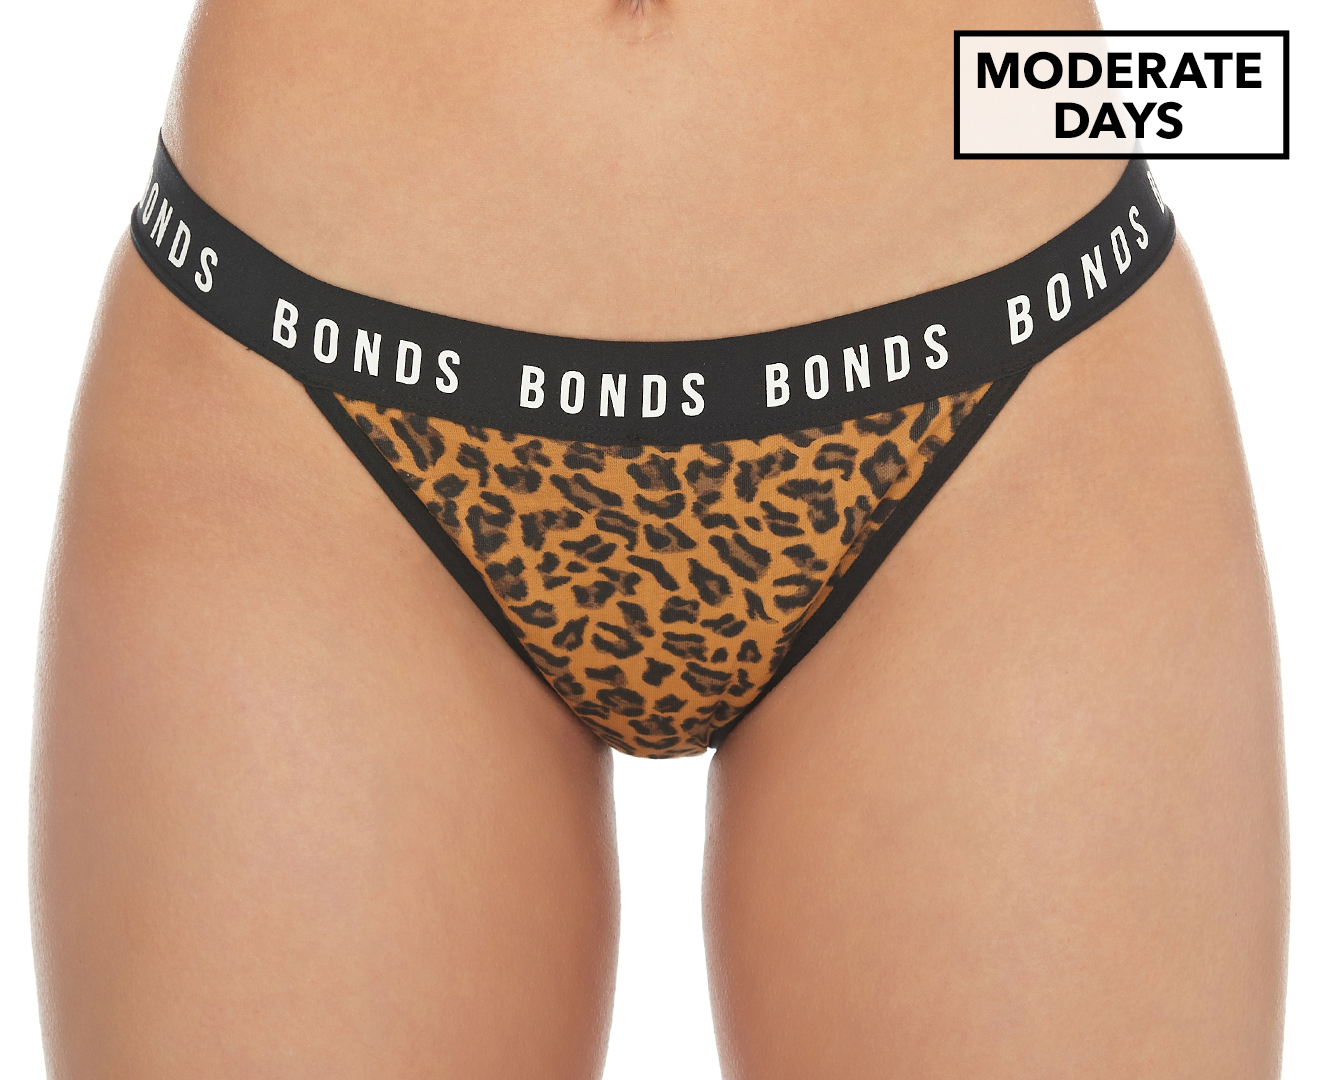 Bonds Bloody Comfy Period Undies Bikini Brief, Moderate, Super Floral -  Briefs